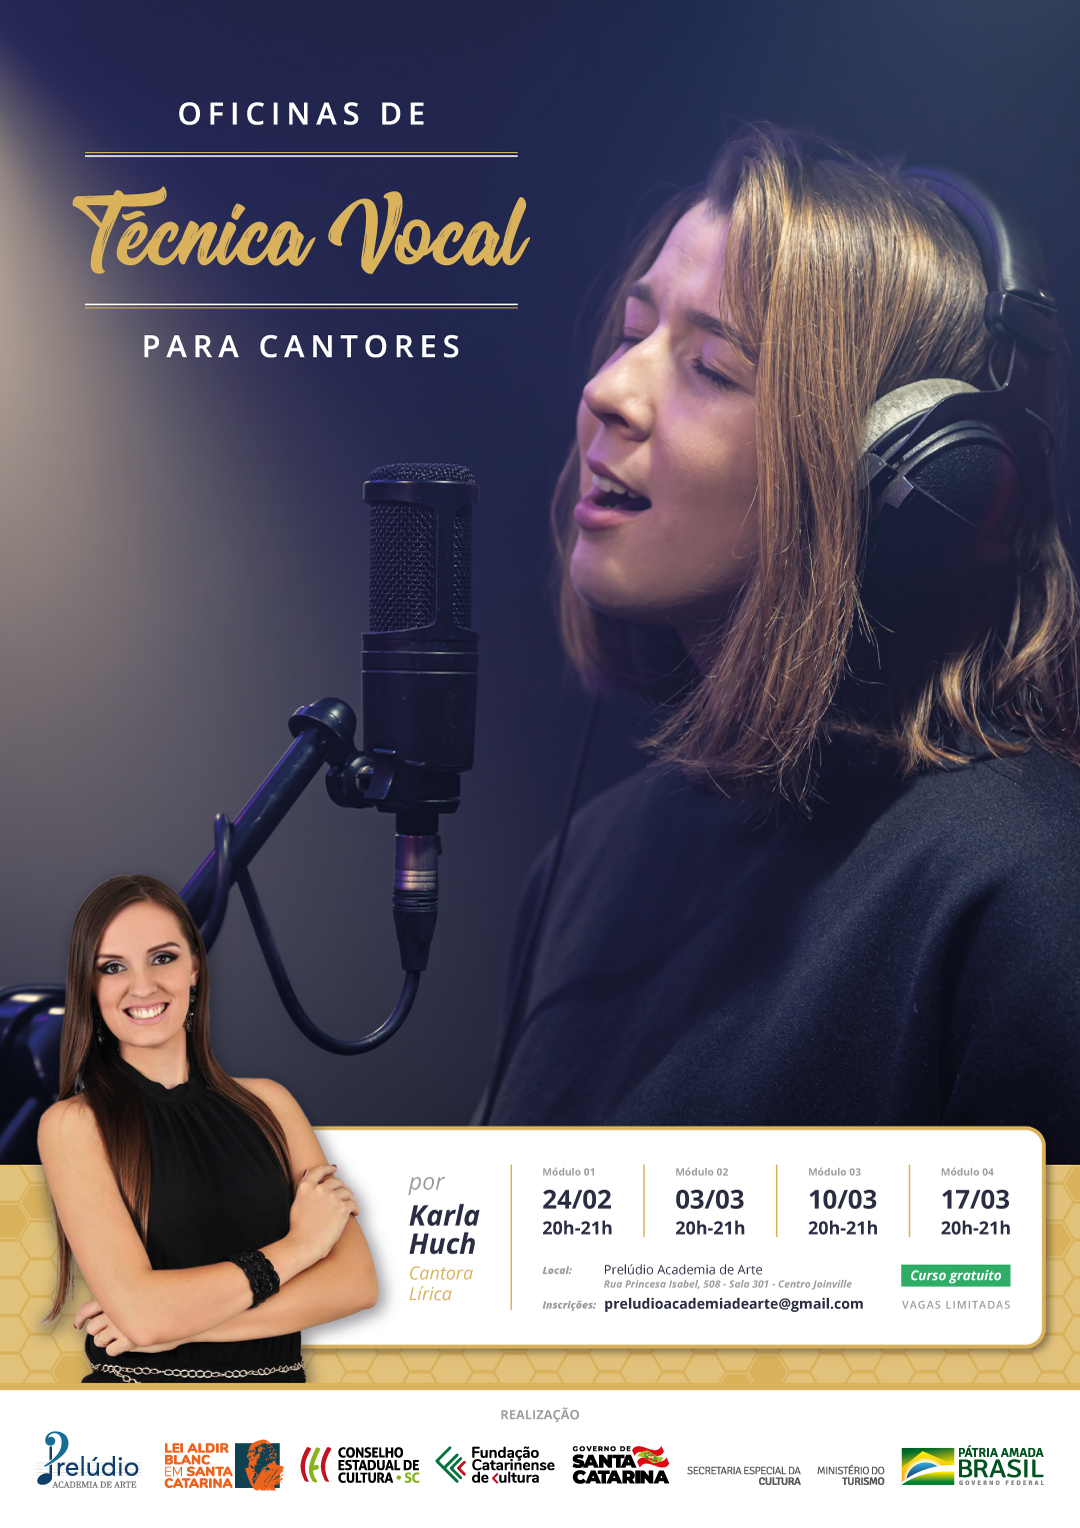 Oficina gratuita de técnica vocal com Karla Huch